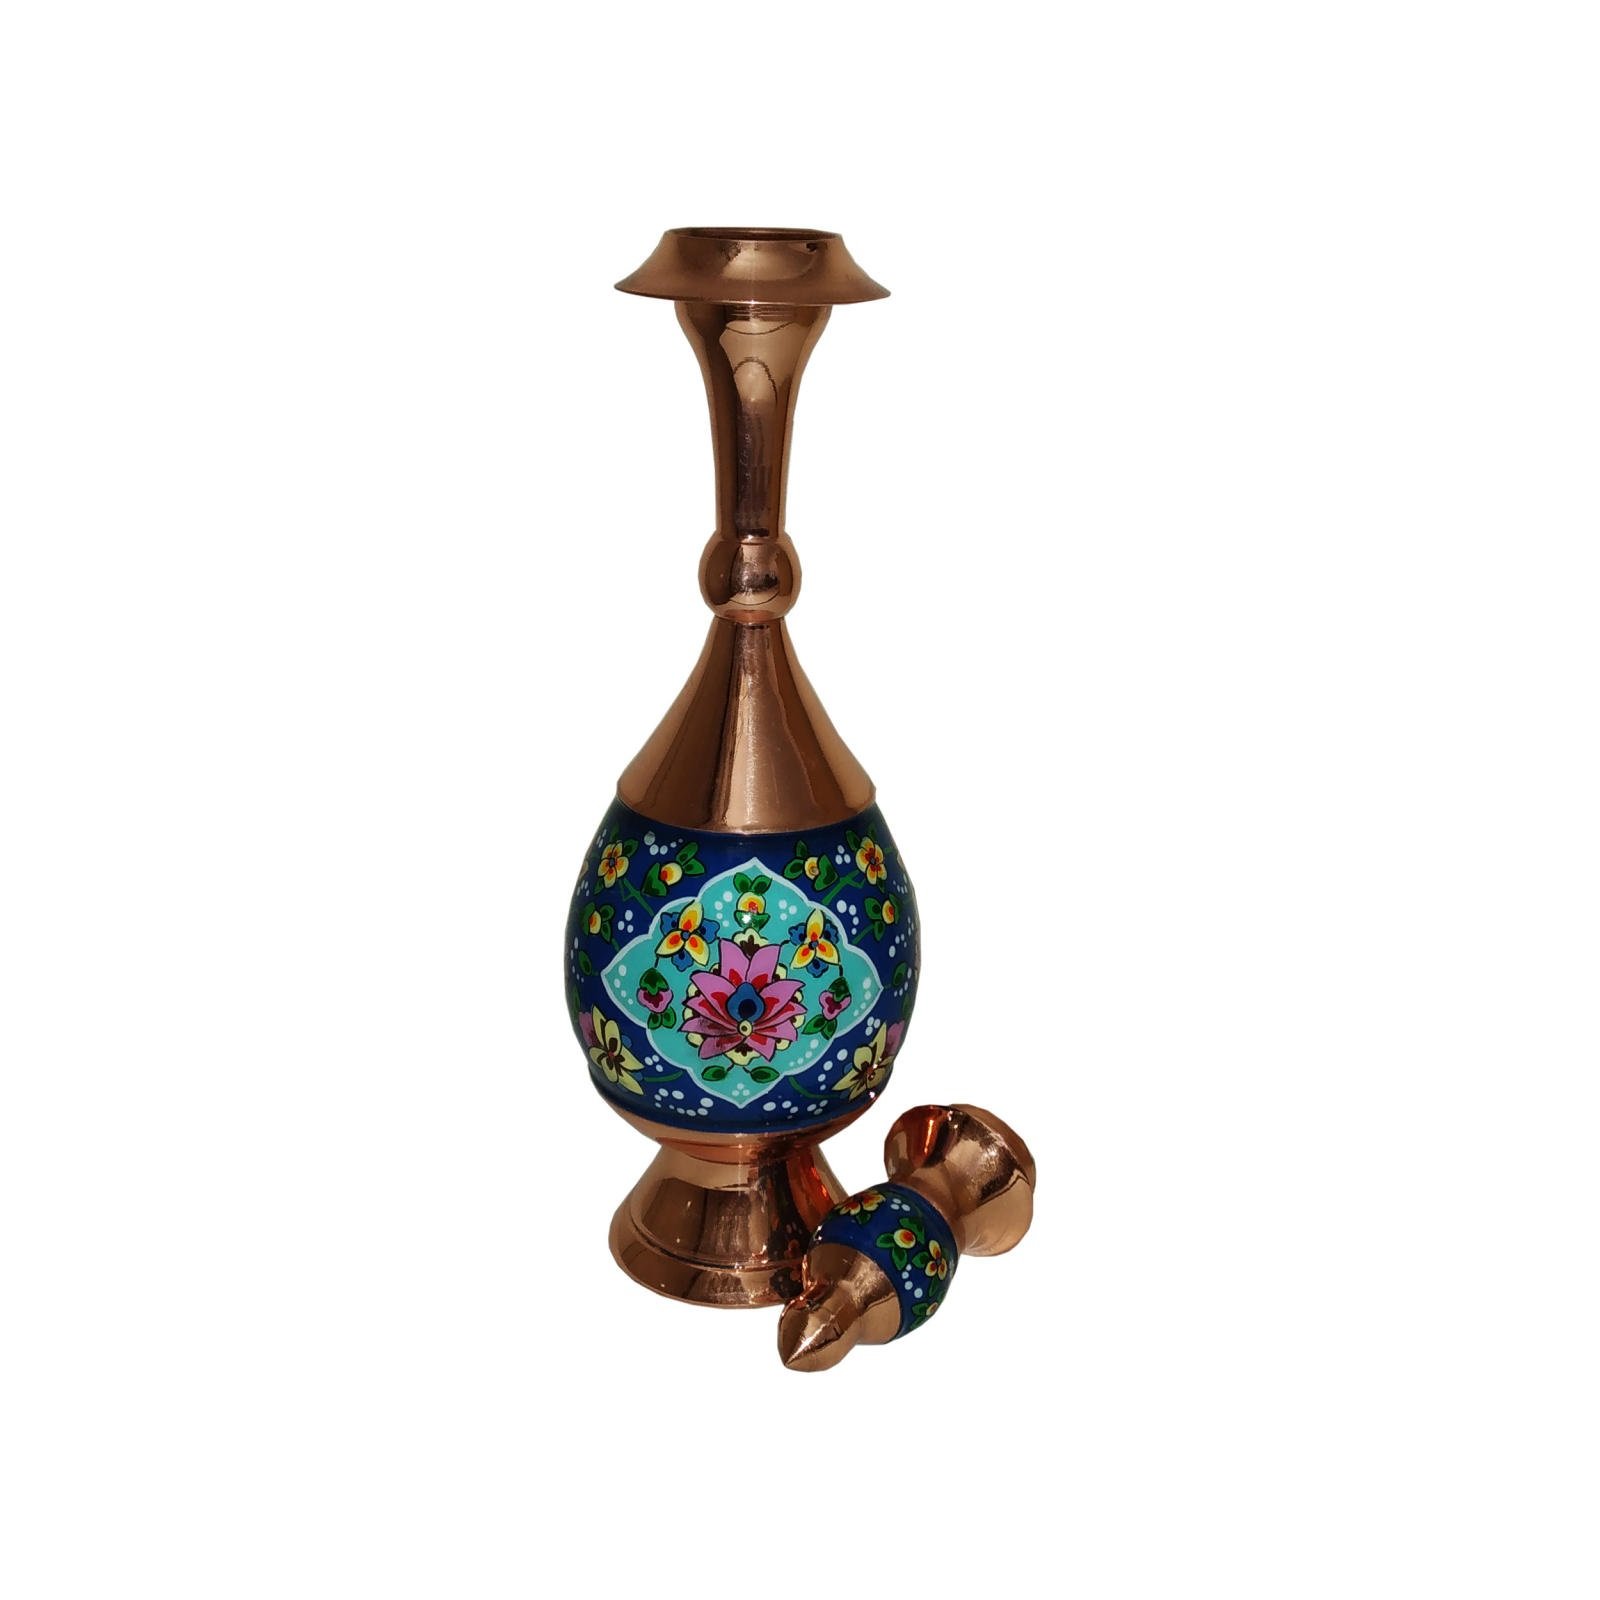 Handicraft Copper Pitcher model pardaz code KS25,persian copper goods,copper goods